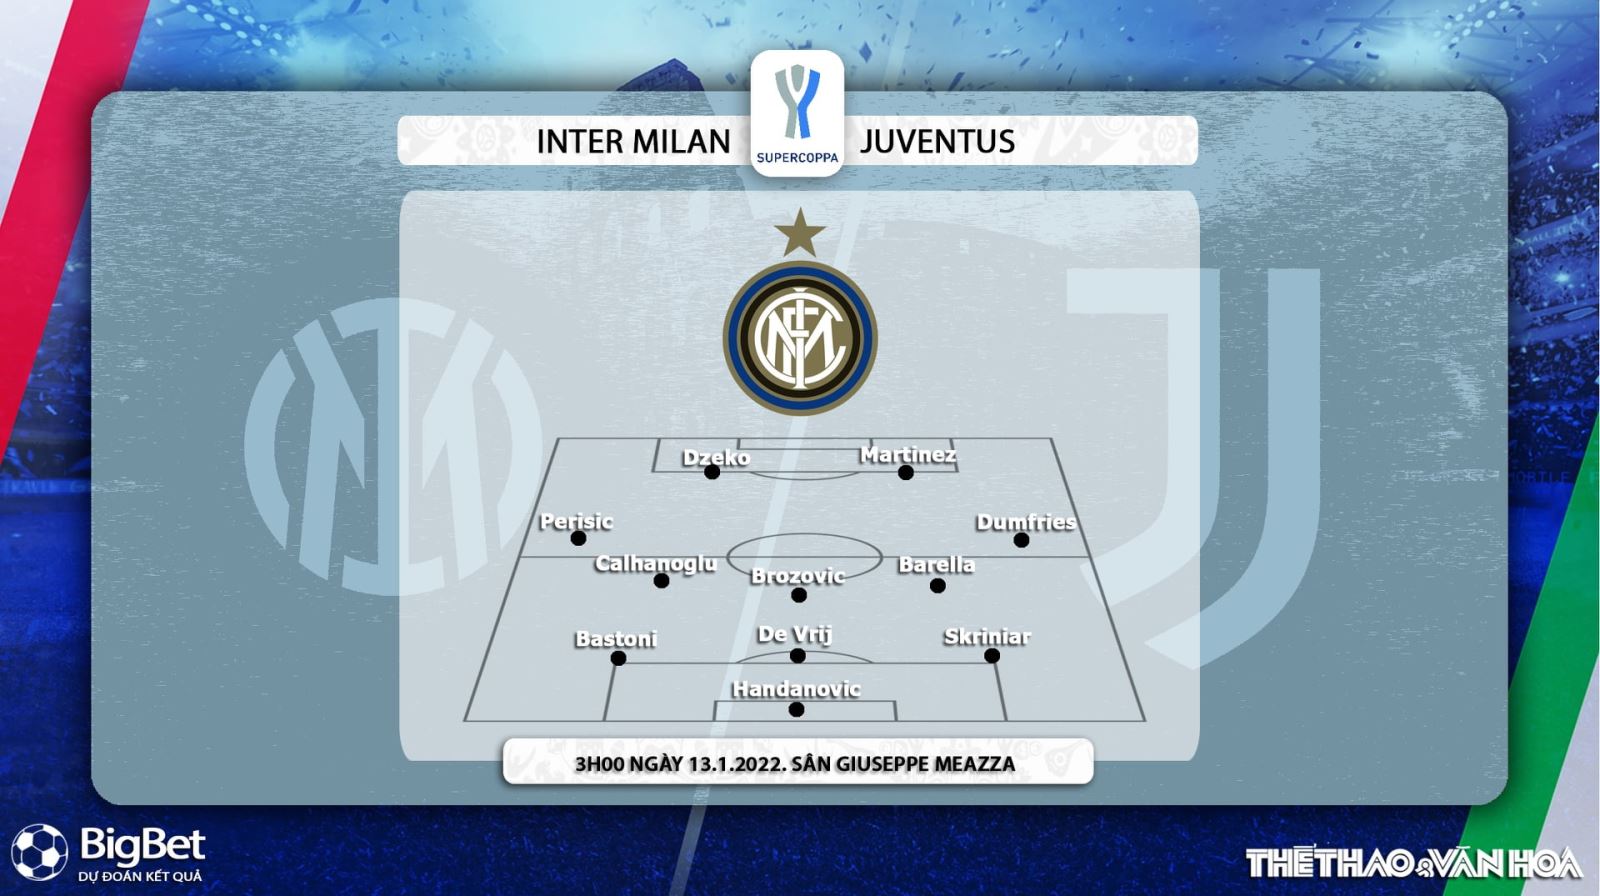 Inter Milan vs Juventus, kèo nhà cái, soi kèo Inter Milan vs Juventus, nhận định bóng đá, Inter Milan, Juventus, keo nha cai, dự đoán bóng đá, Siêu Cup bóng đá Italy